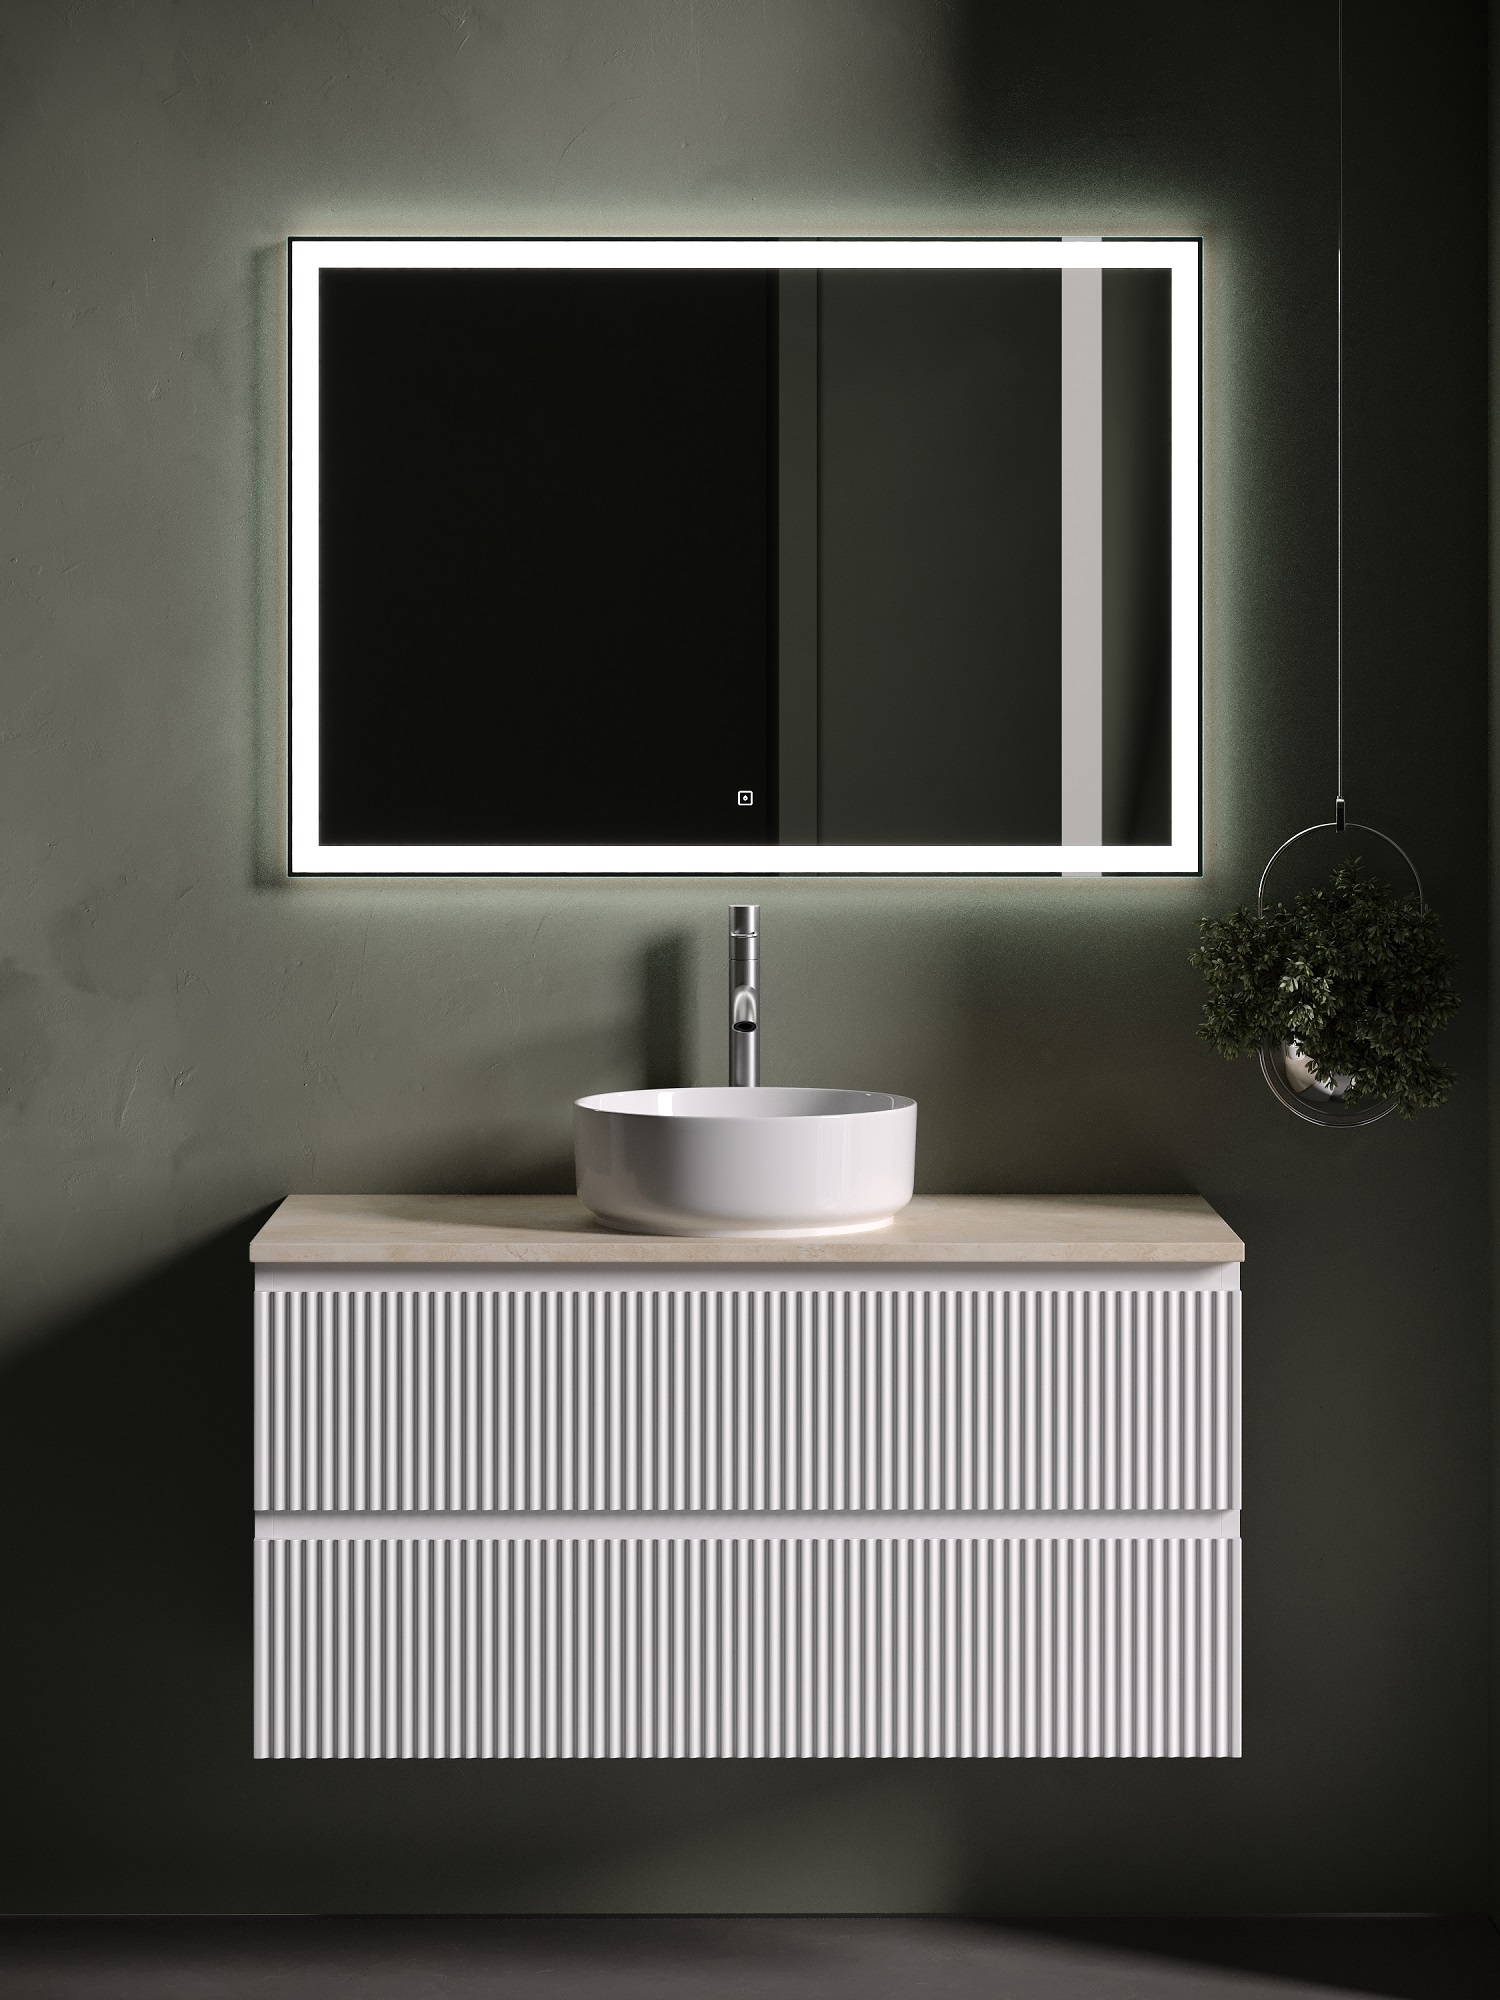 Мебель для ванной Sancos Snob R 100 подвесная, столешница kreman, Bianco (с отверстием под смеситель)